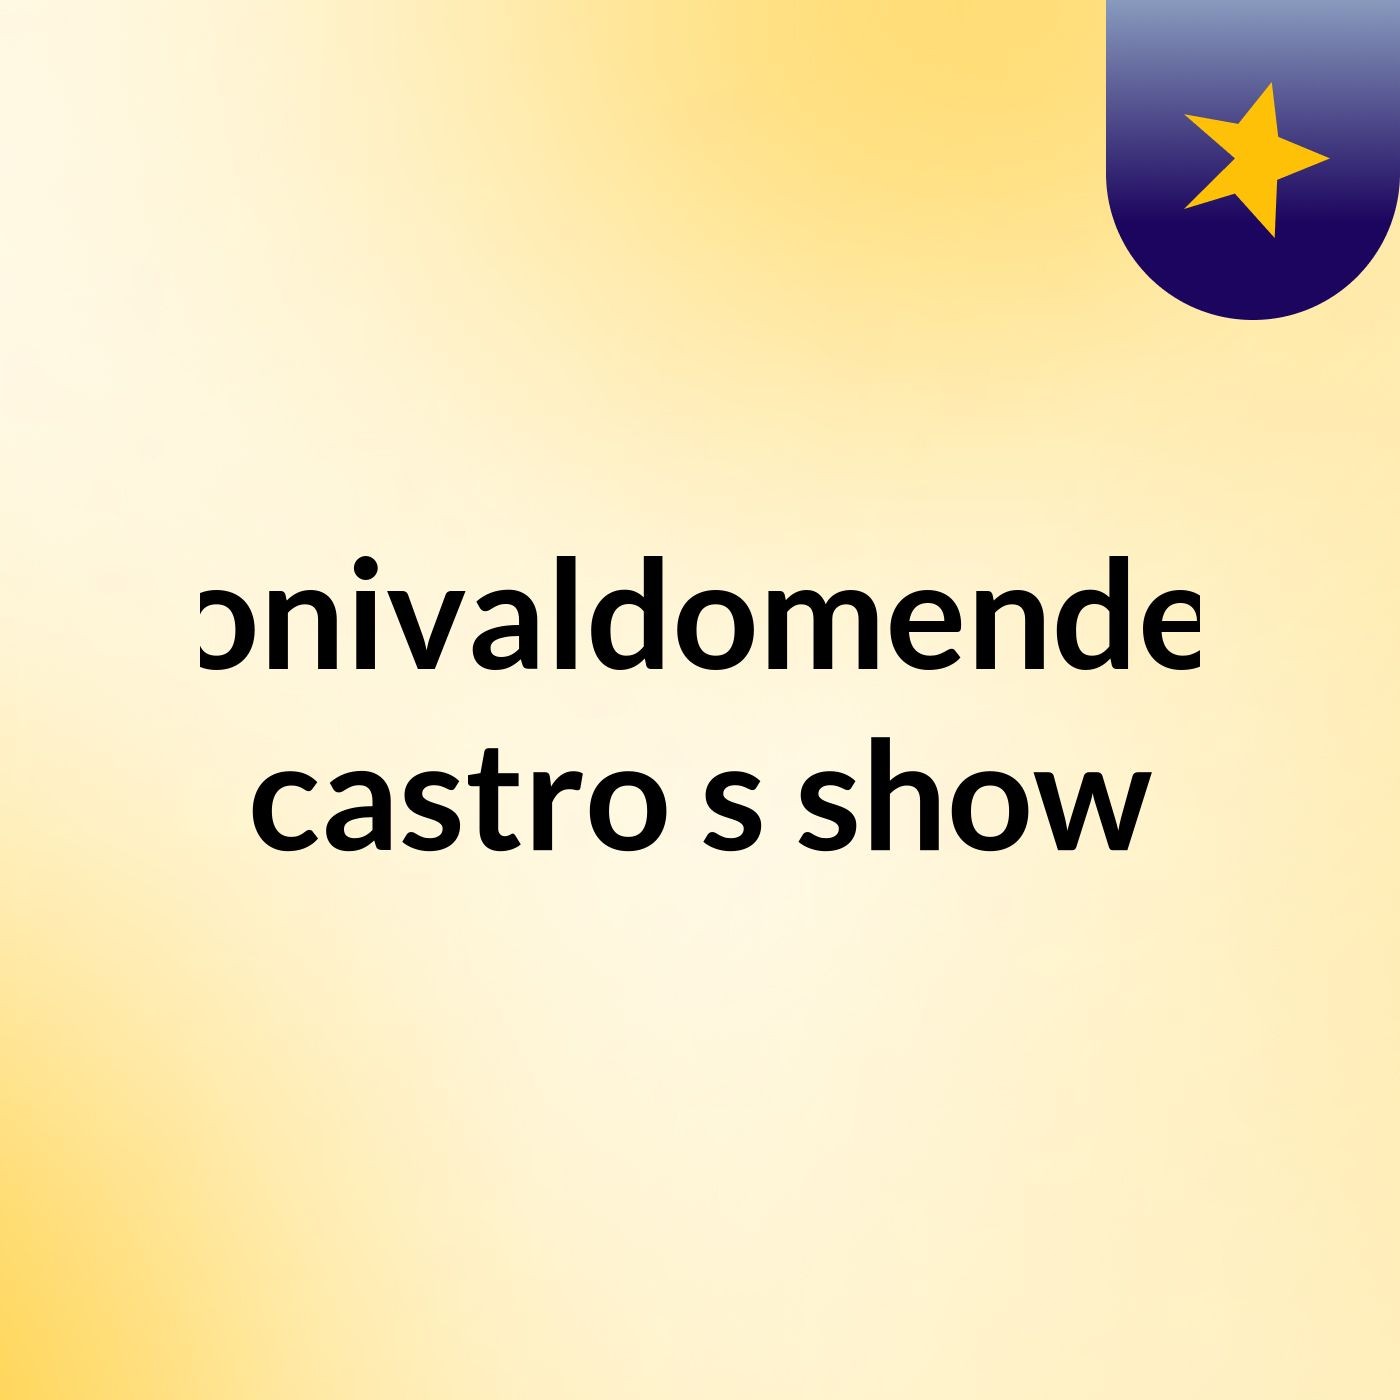 tonivaldomendes castro's show